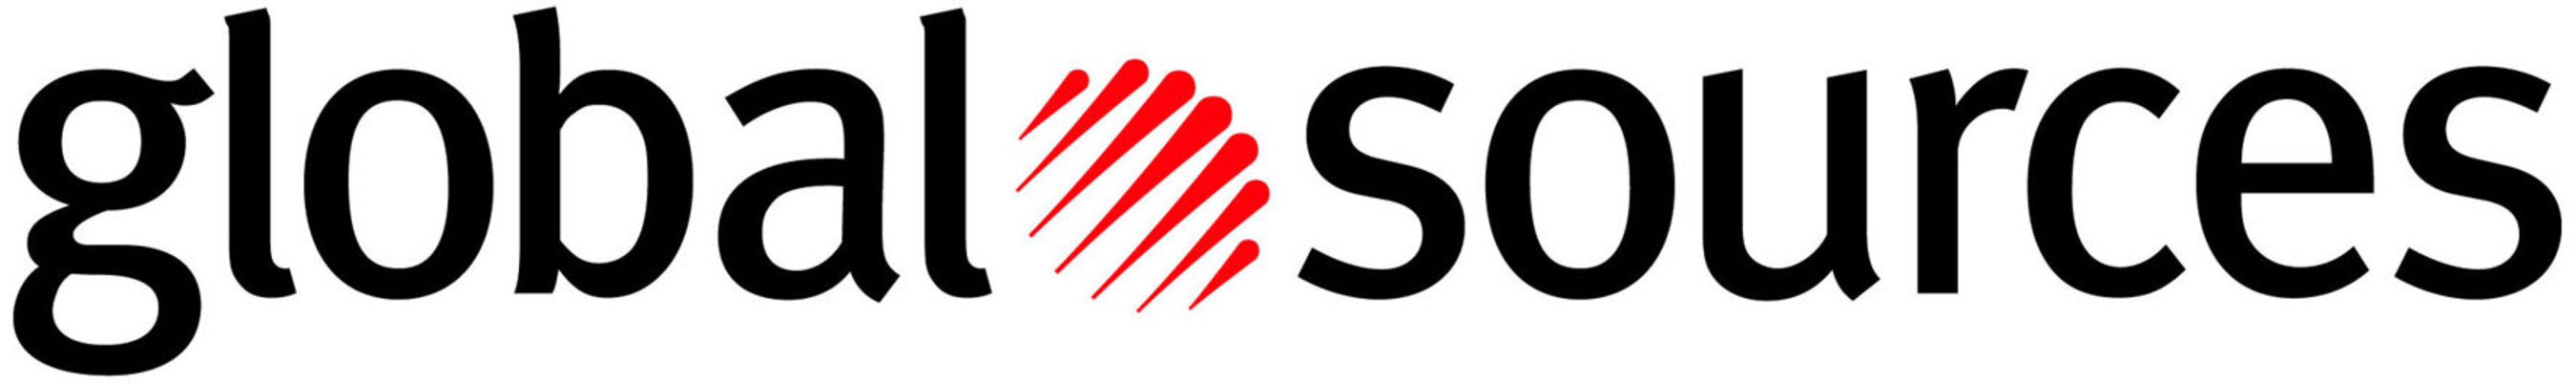 Global Sourcecs Logo